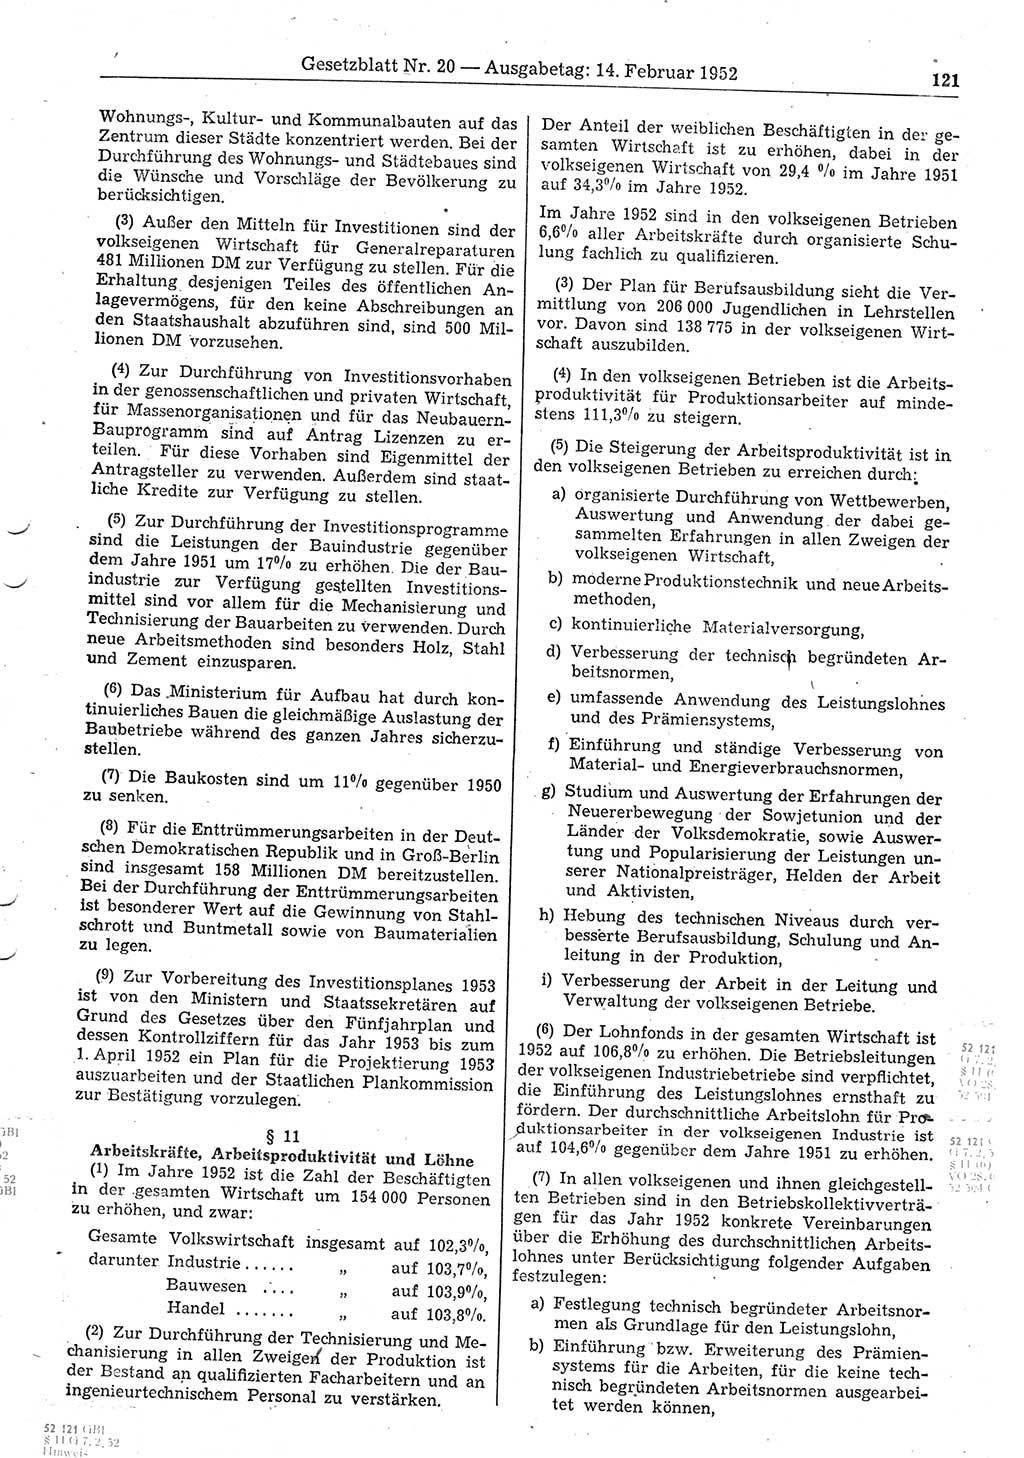 Gesetzblatt (GBl.) der Deutschen Demokratischen Republik (DDR) 1952, Seite 121 (GBl. DDR 1952, S. 121)